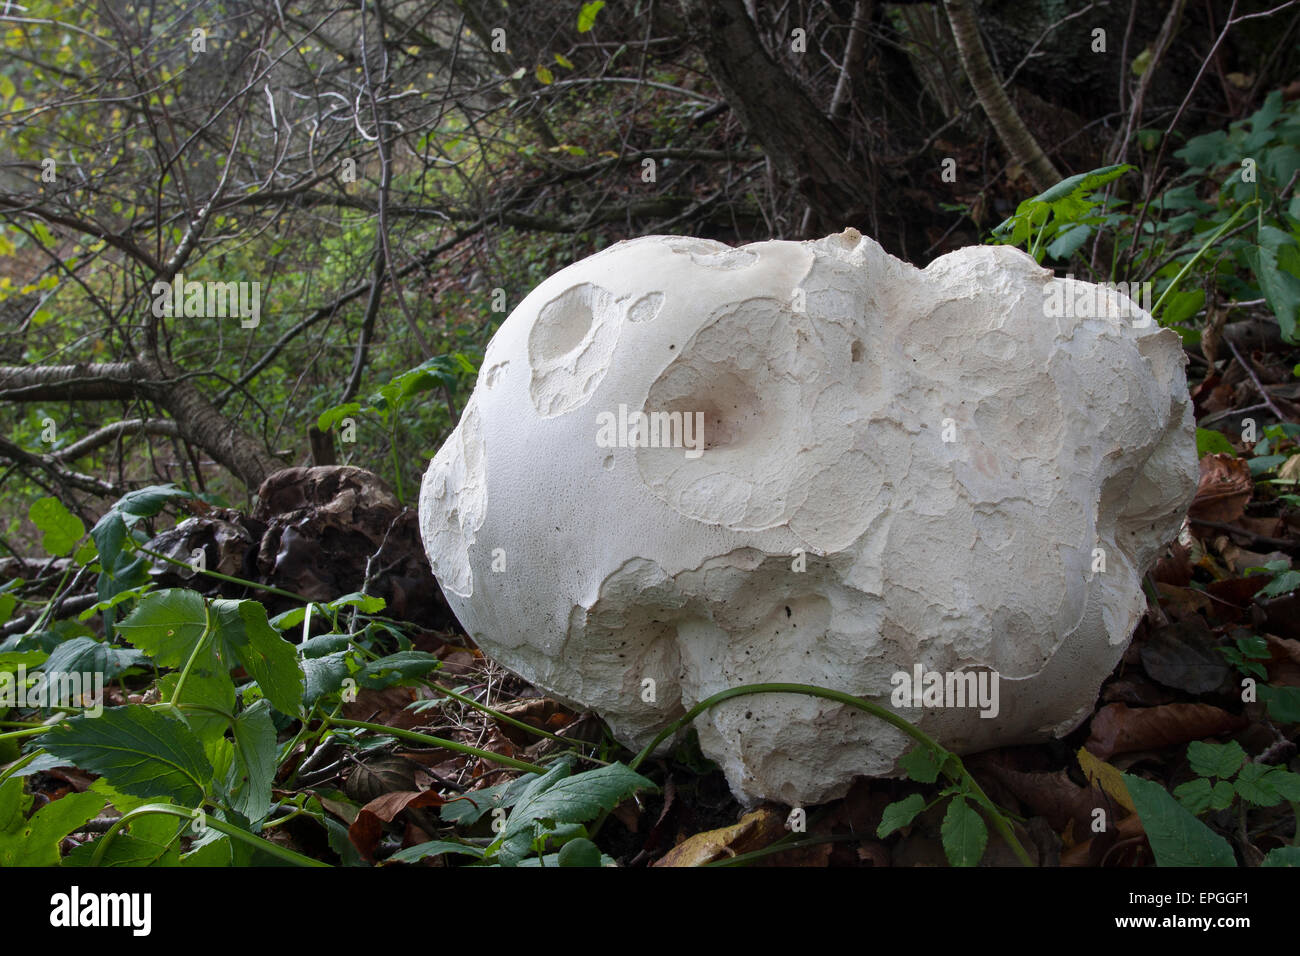 Giant puffball, puffball mushroom, Riesenbovist, Riesen-Bovist, Riesen-Stäubling, Calvatia gigantea, Langermannia gigantea Stock Photo